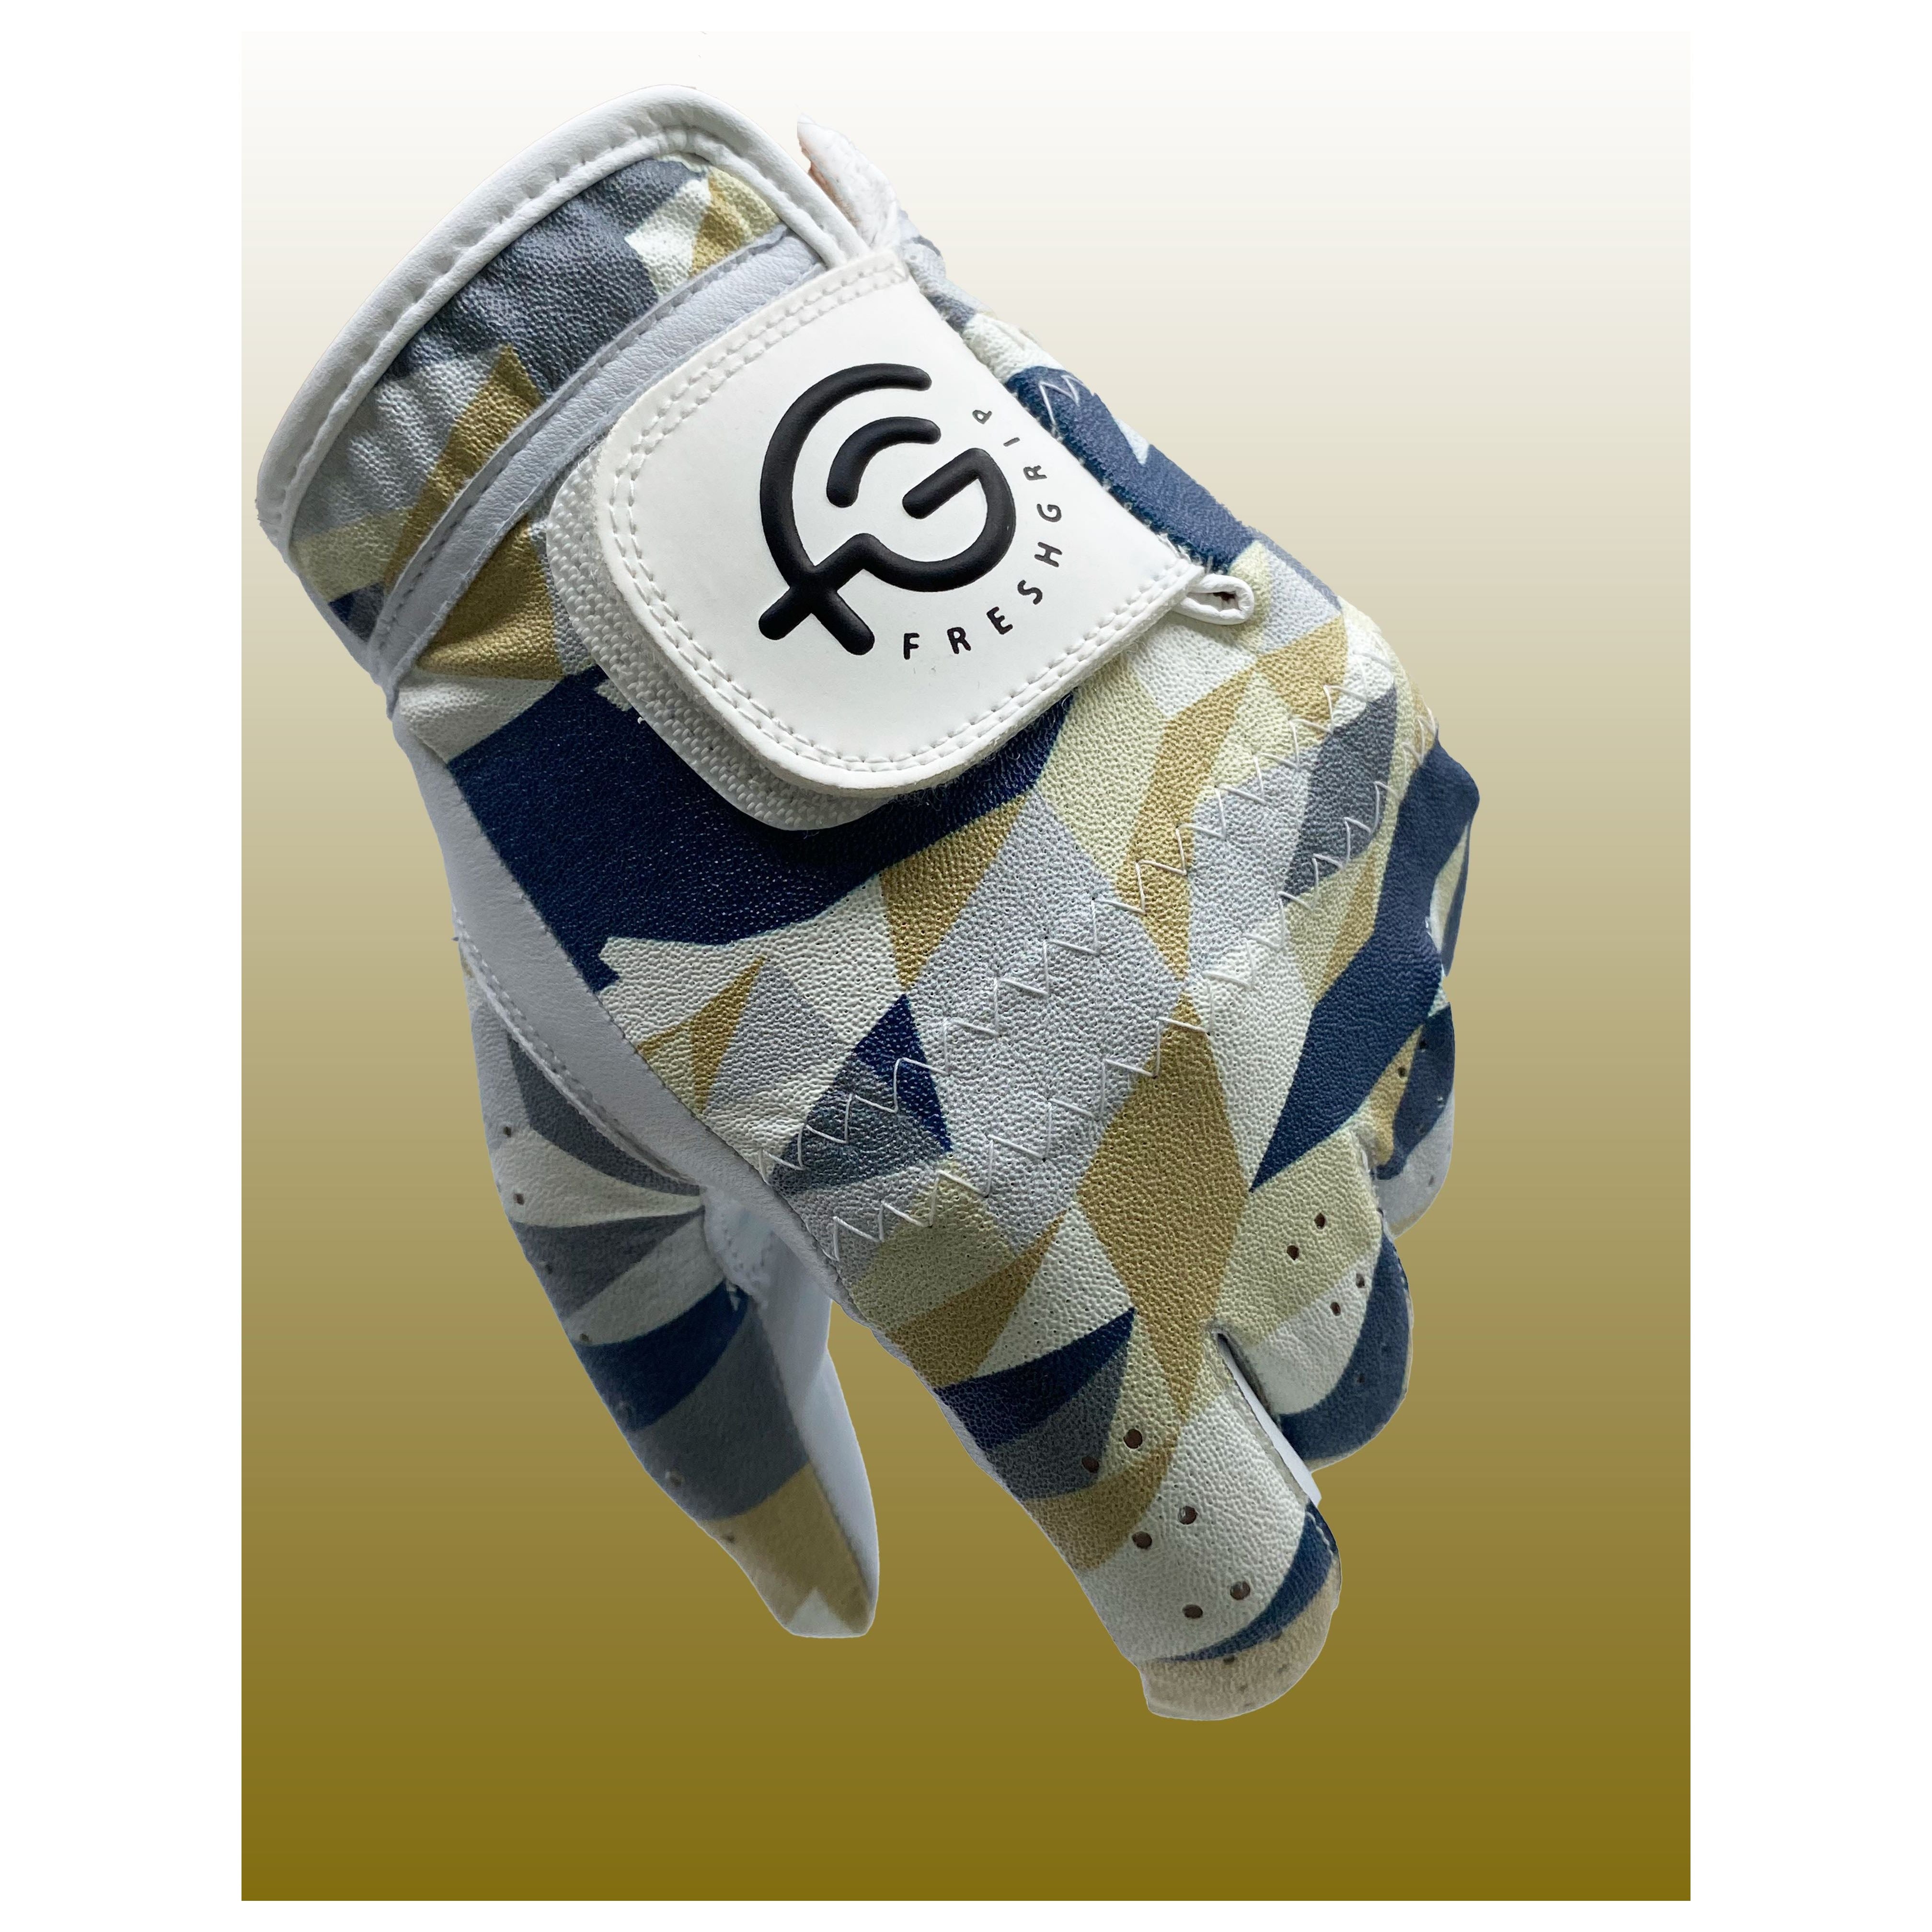 Urban Camo Glove Glove FreshGrip 